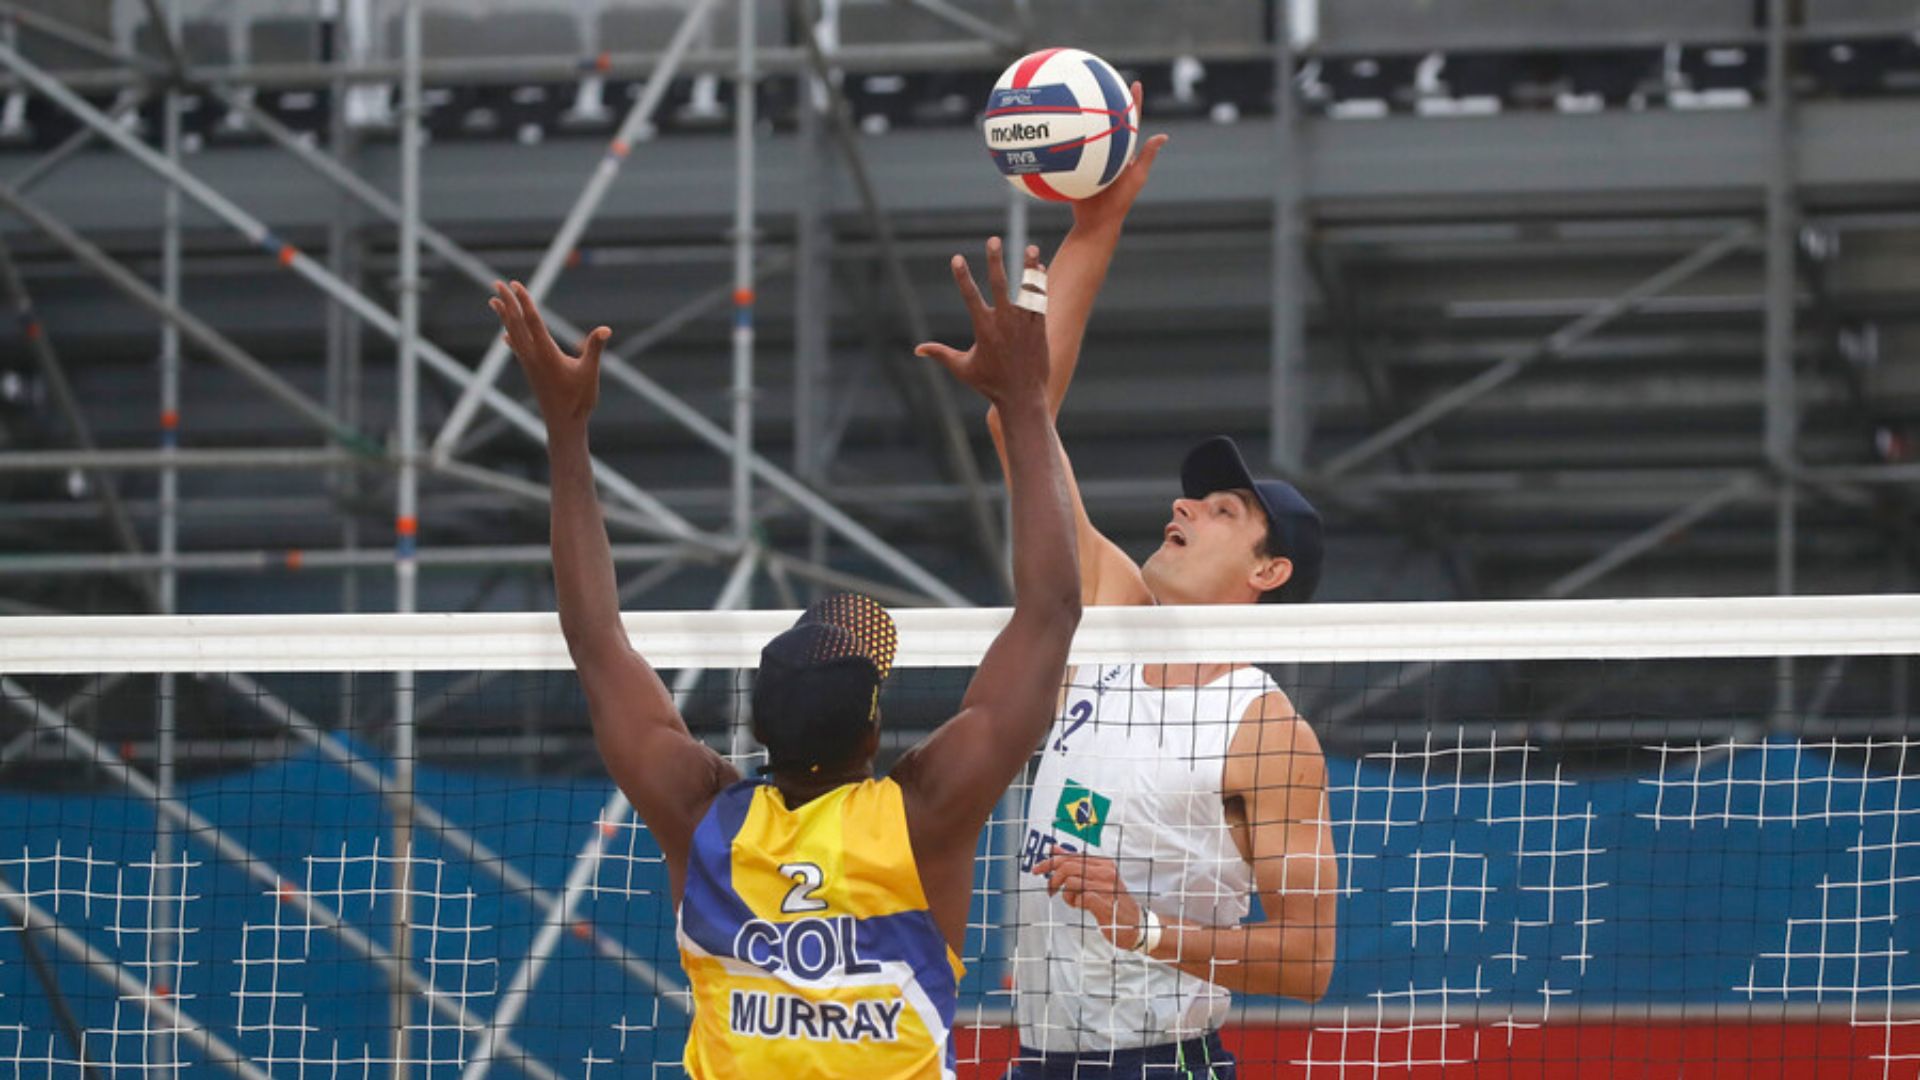 Brasileños Loyola y Souto siguen imparables en el vóleibol playa